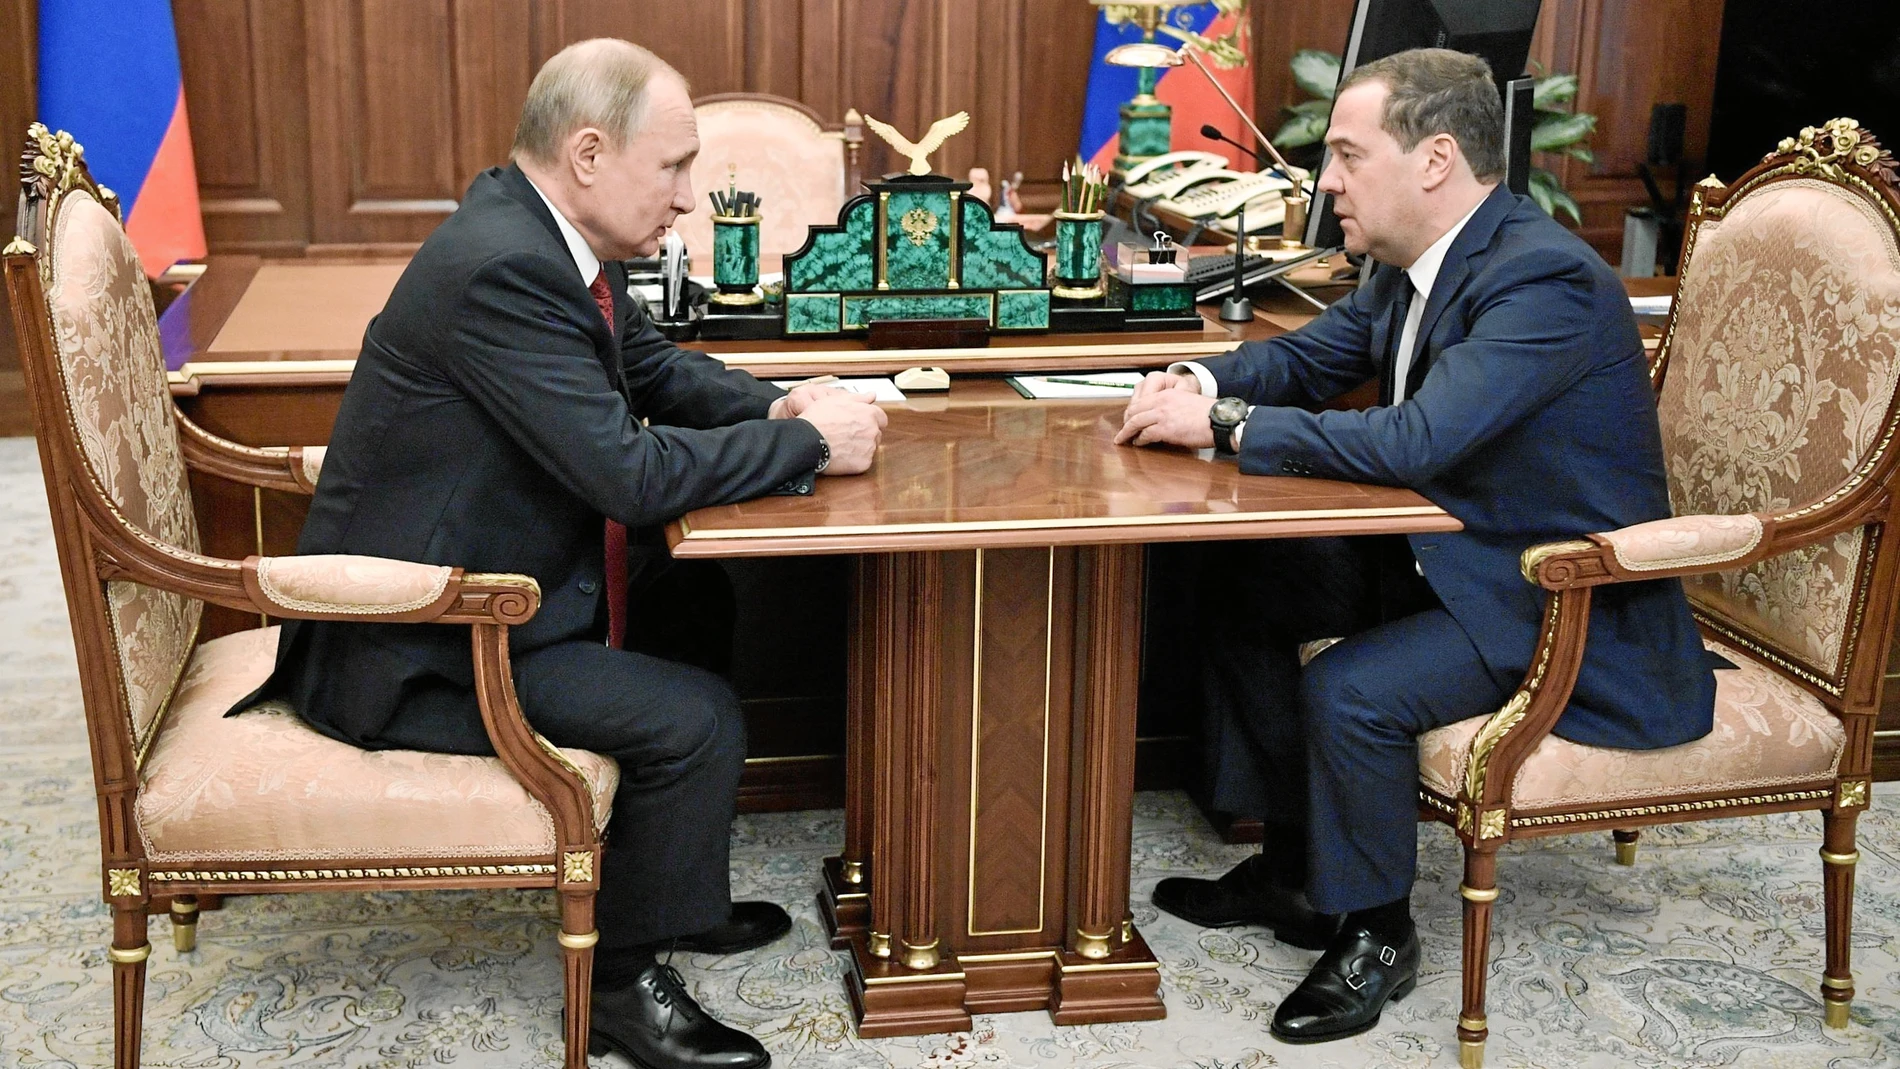 El presidente ruso, Vladimir Putin, durante una reunión con el vicepresidente del Consejo de Seguridad ruso, Dimitri Medvedev, en Moscú